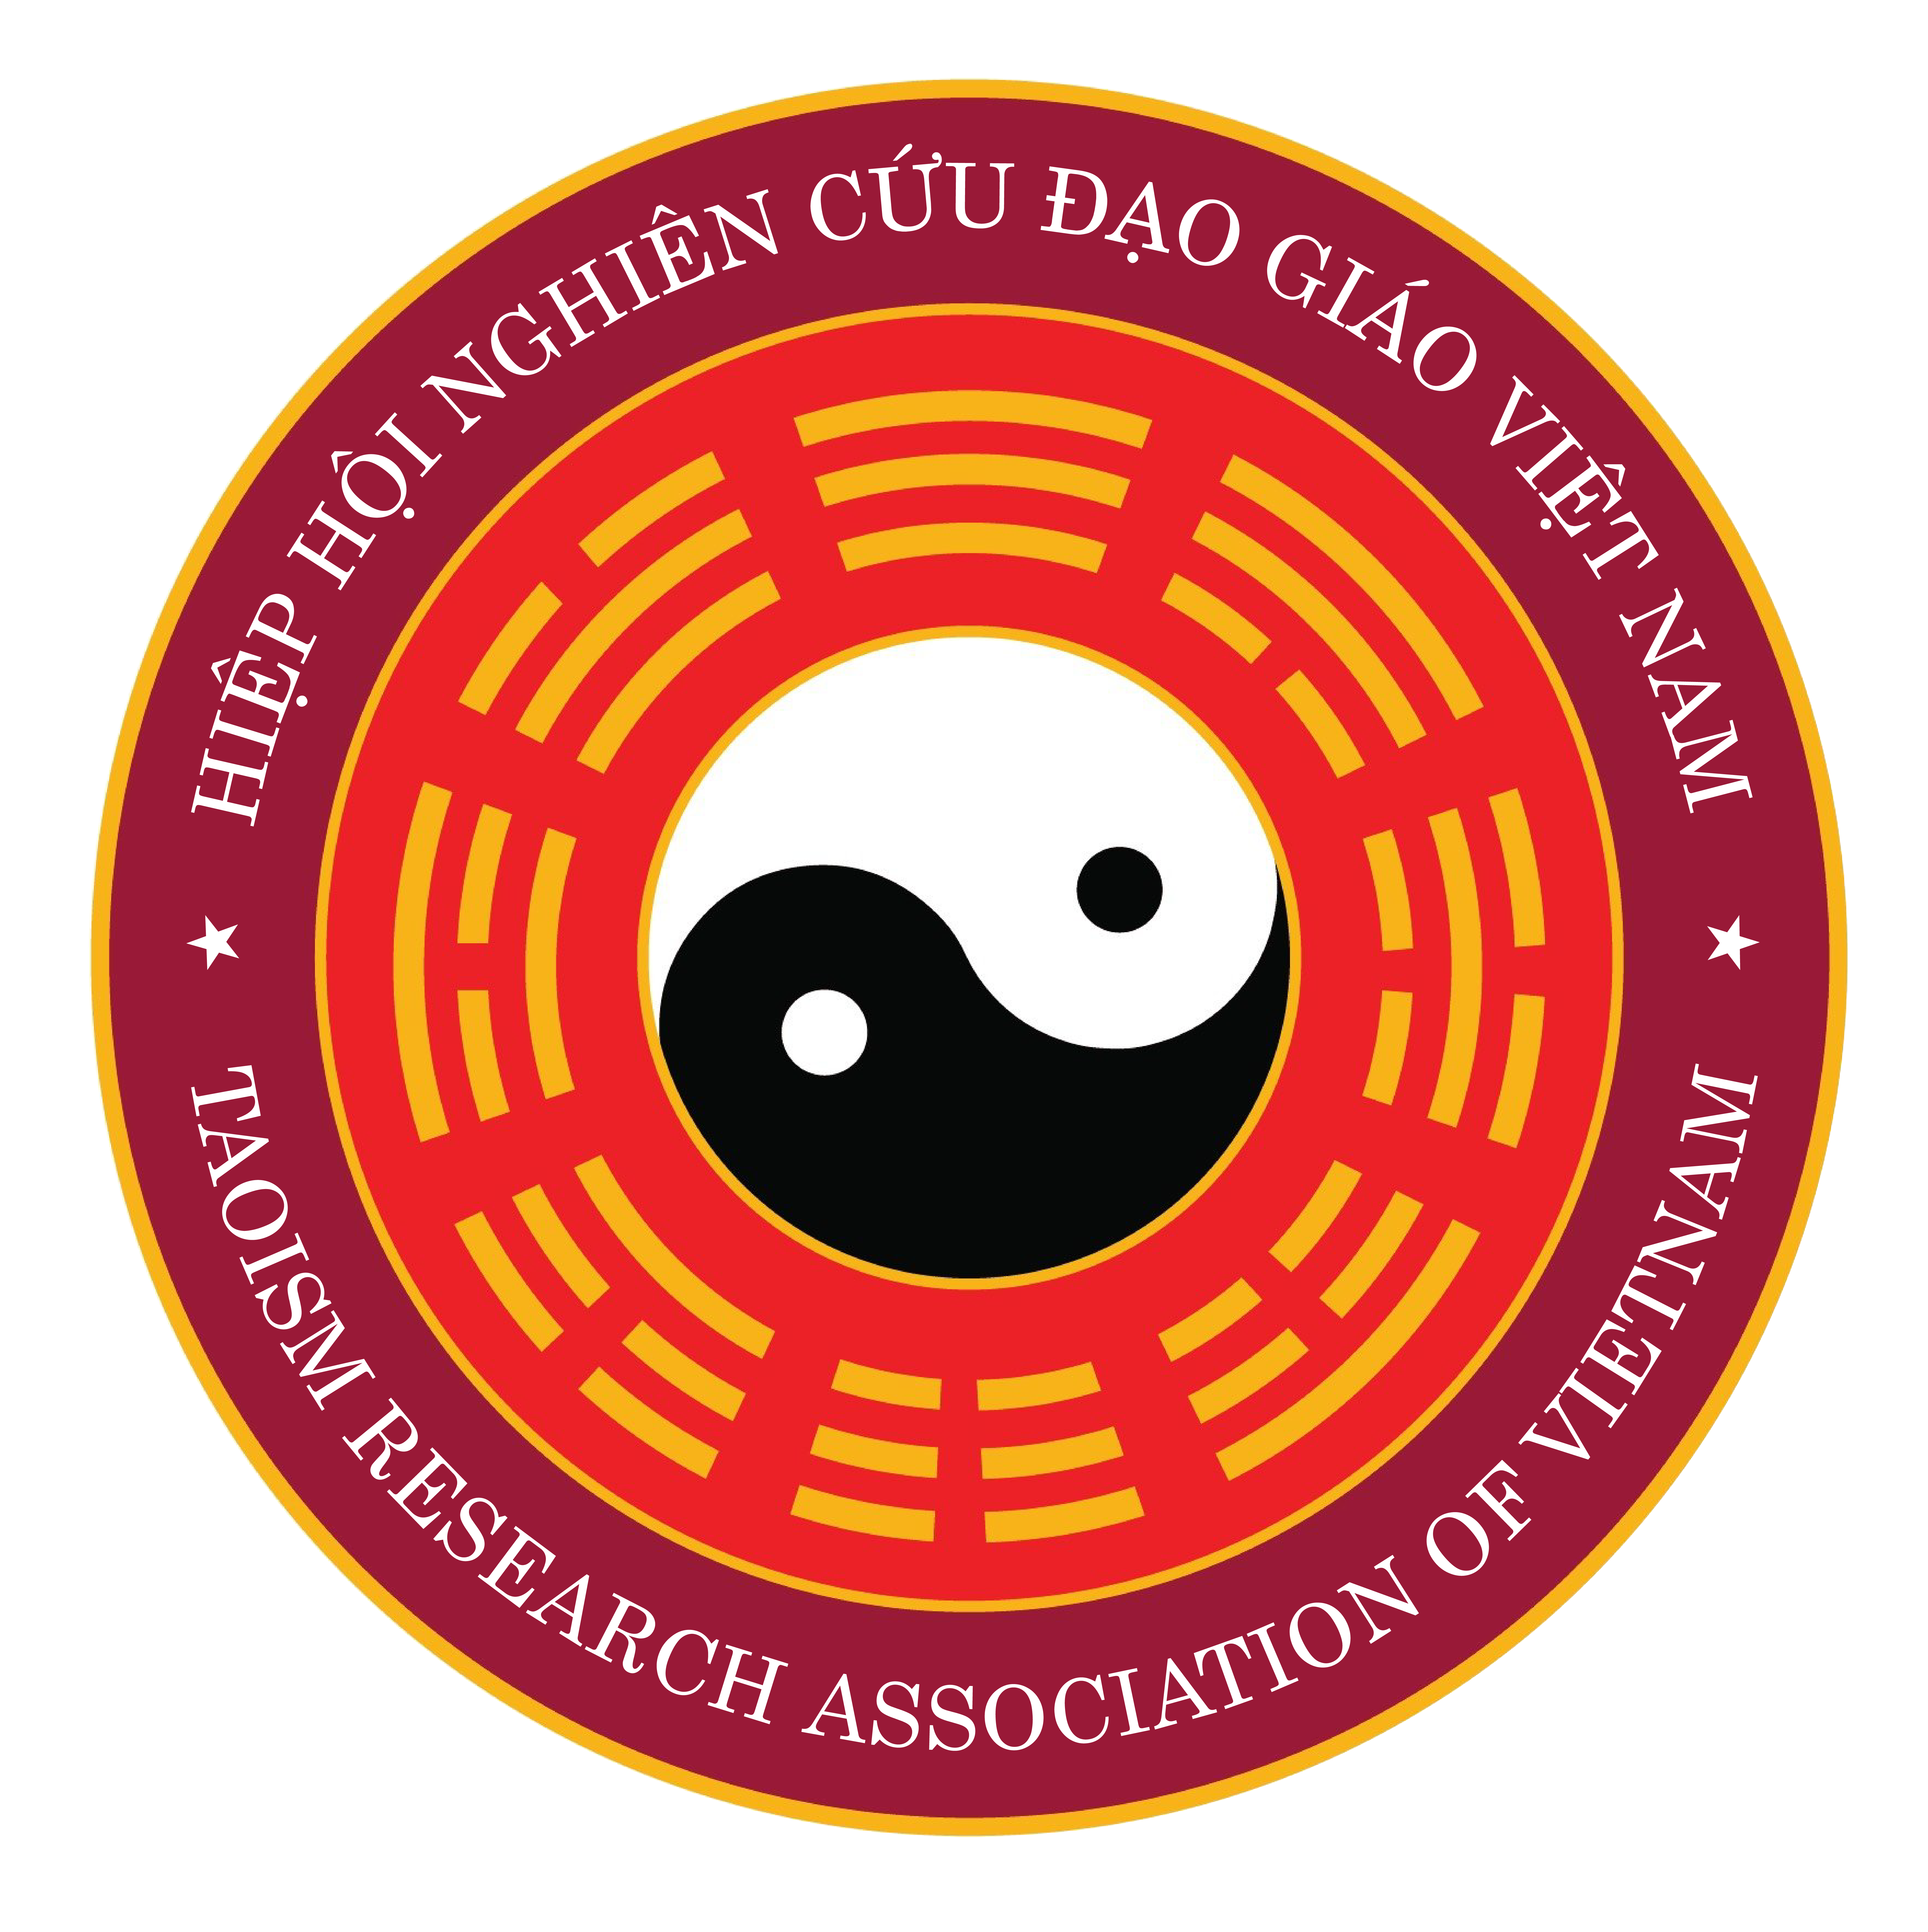 CỔNG THÔNG TIN ĐIỆN TỬ   Hiệp hội nghiên cứu Đạo giáo Việt Nam